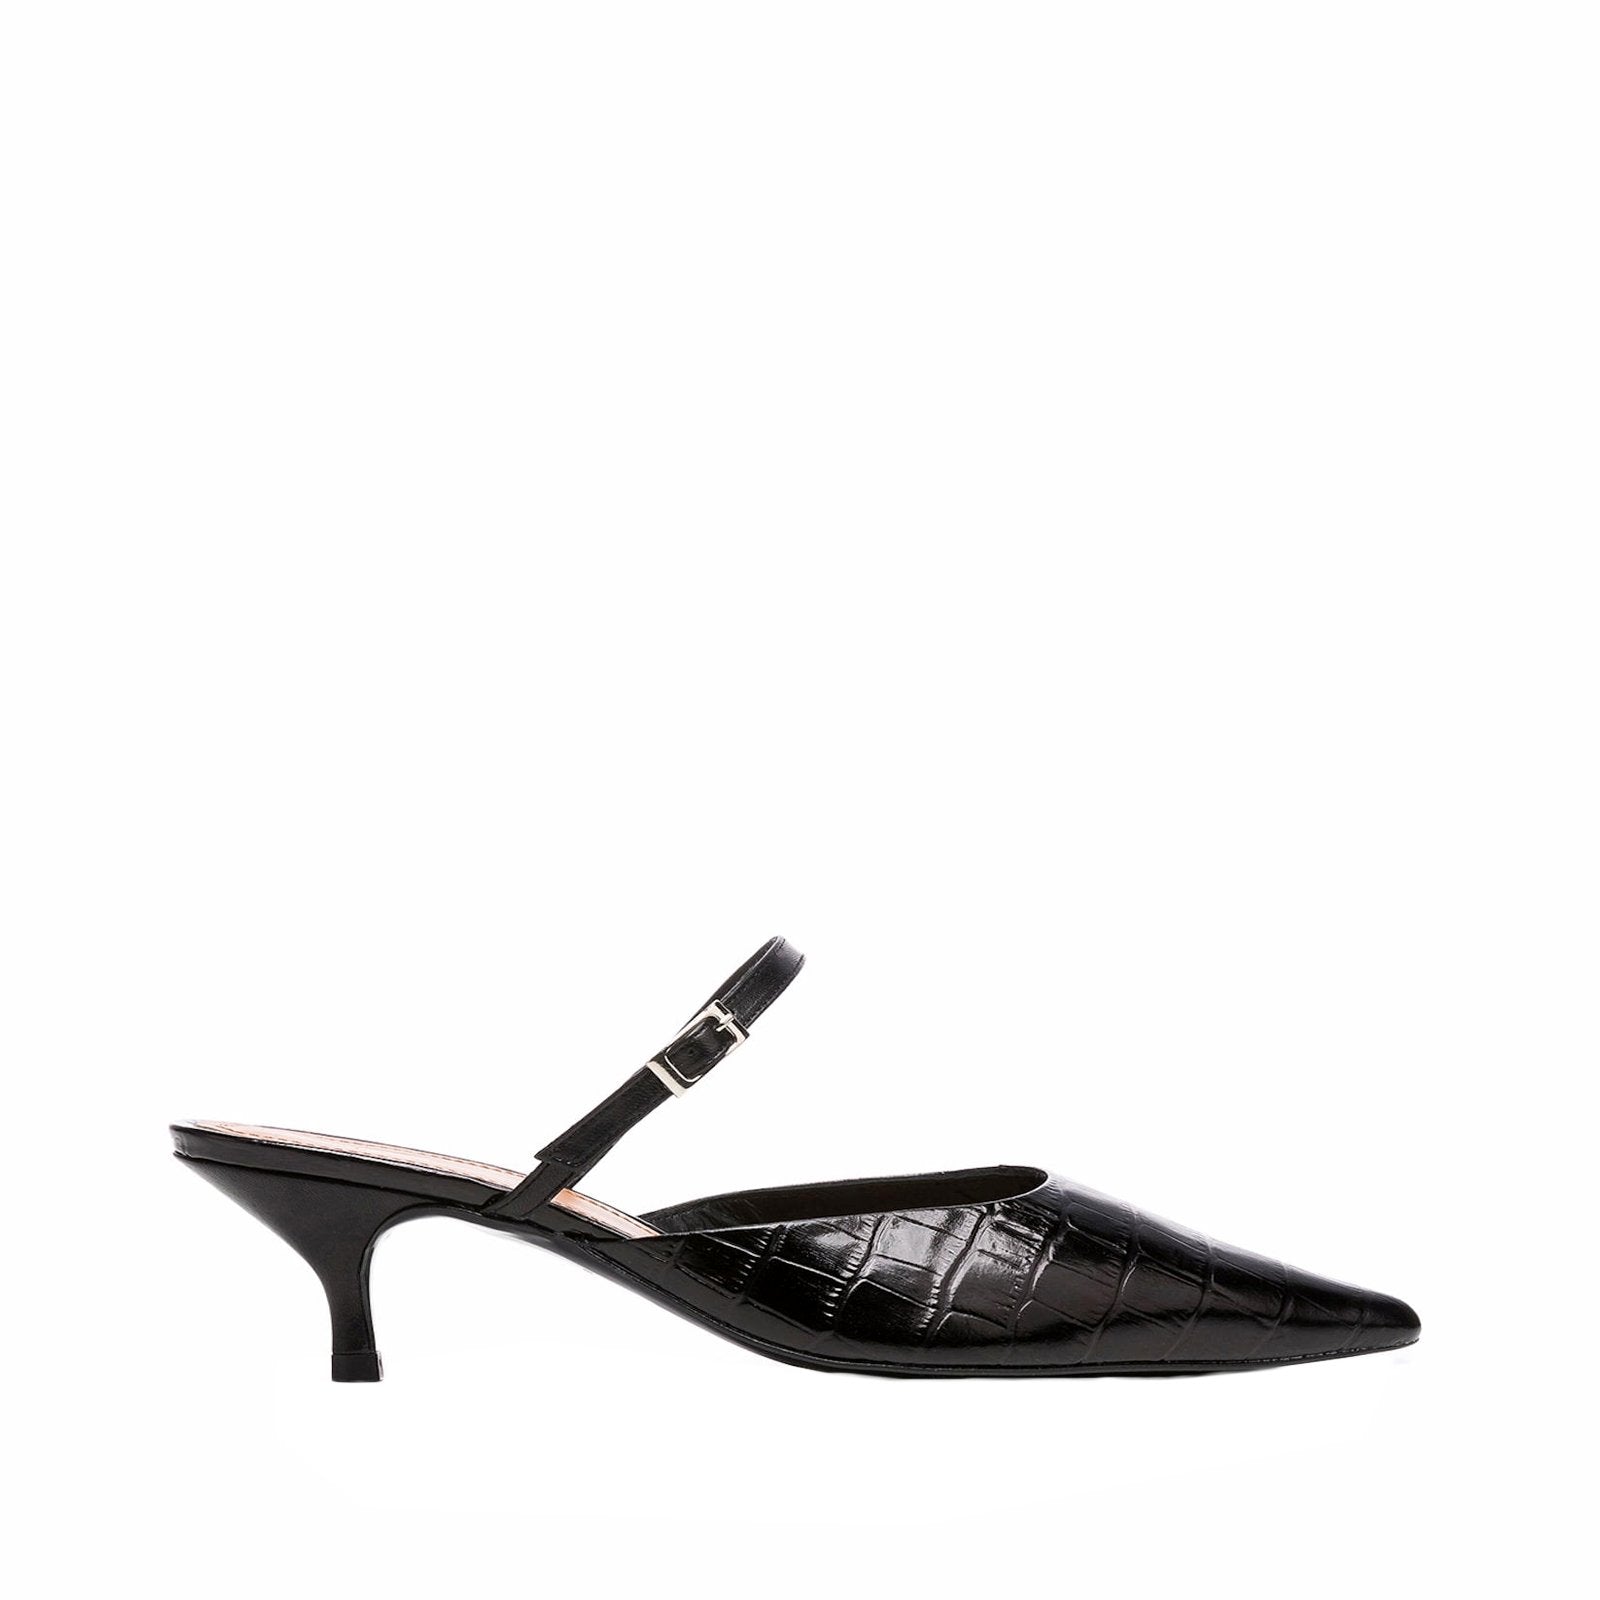 Hilda Croco Leather Black Mule Shoes Heels 20010411817-001 - 1